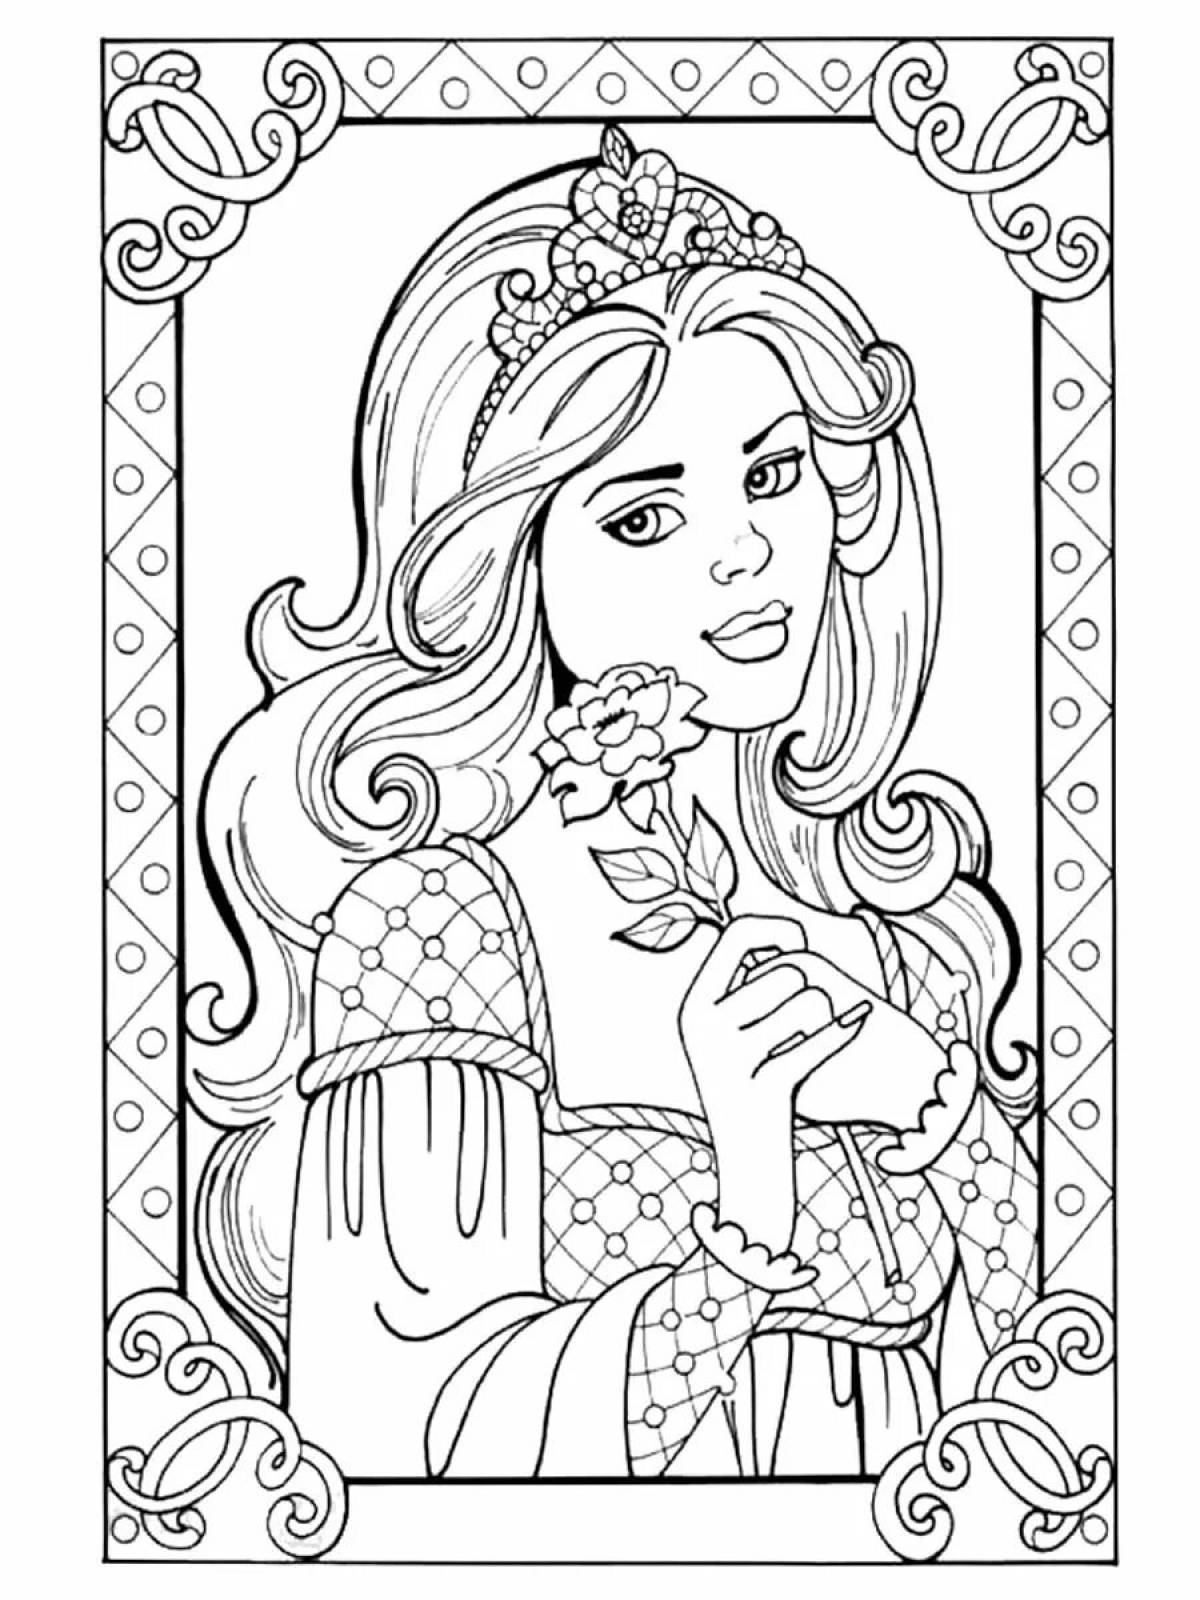 Grand princess coloring book